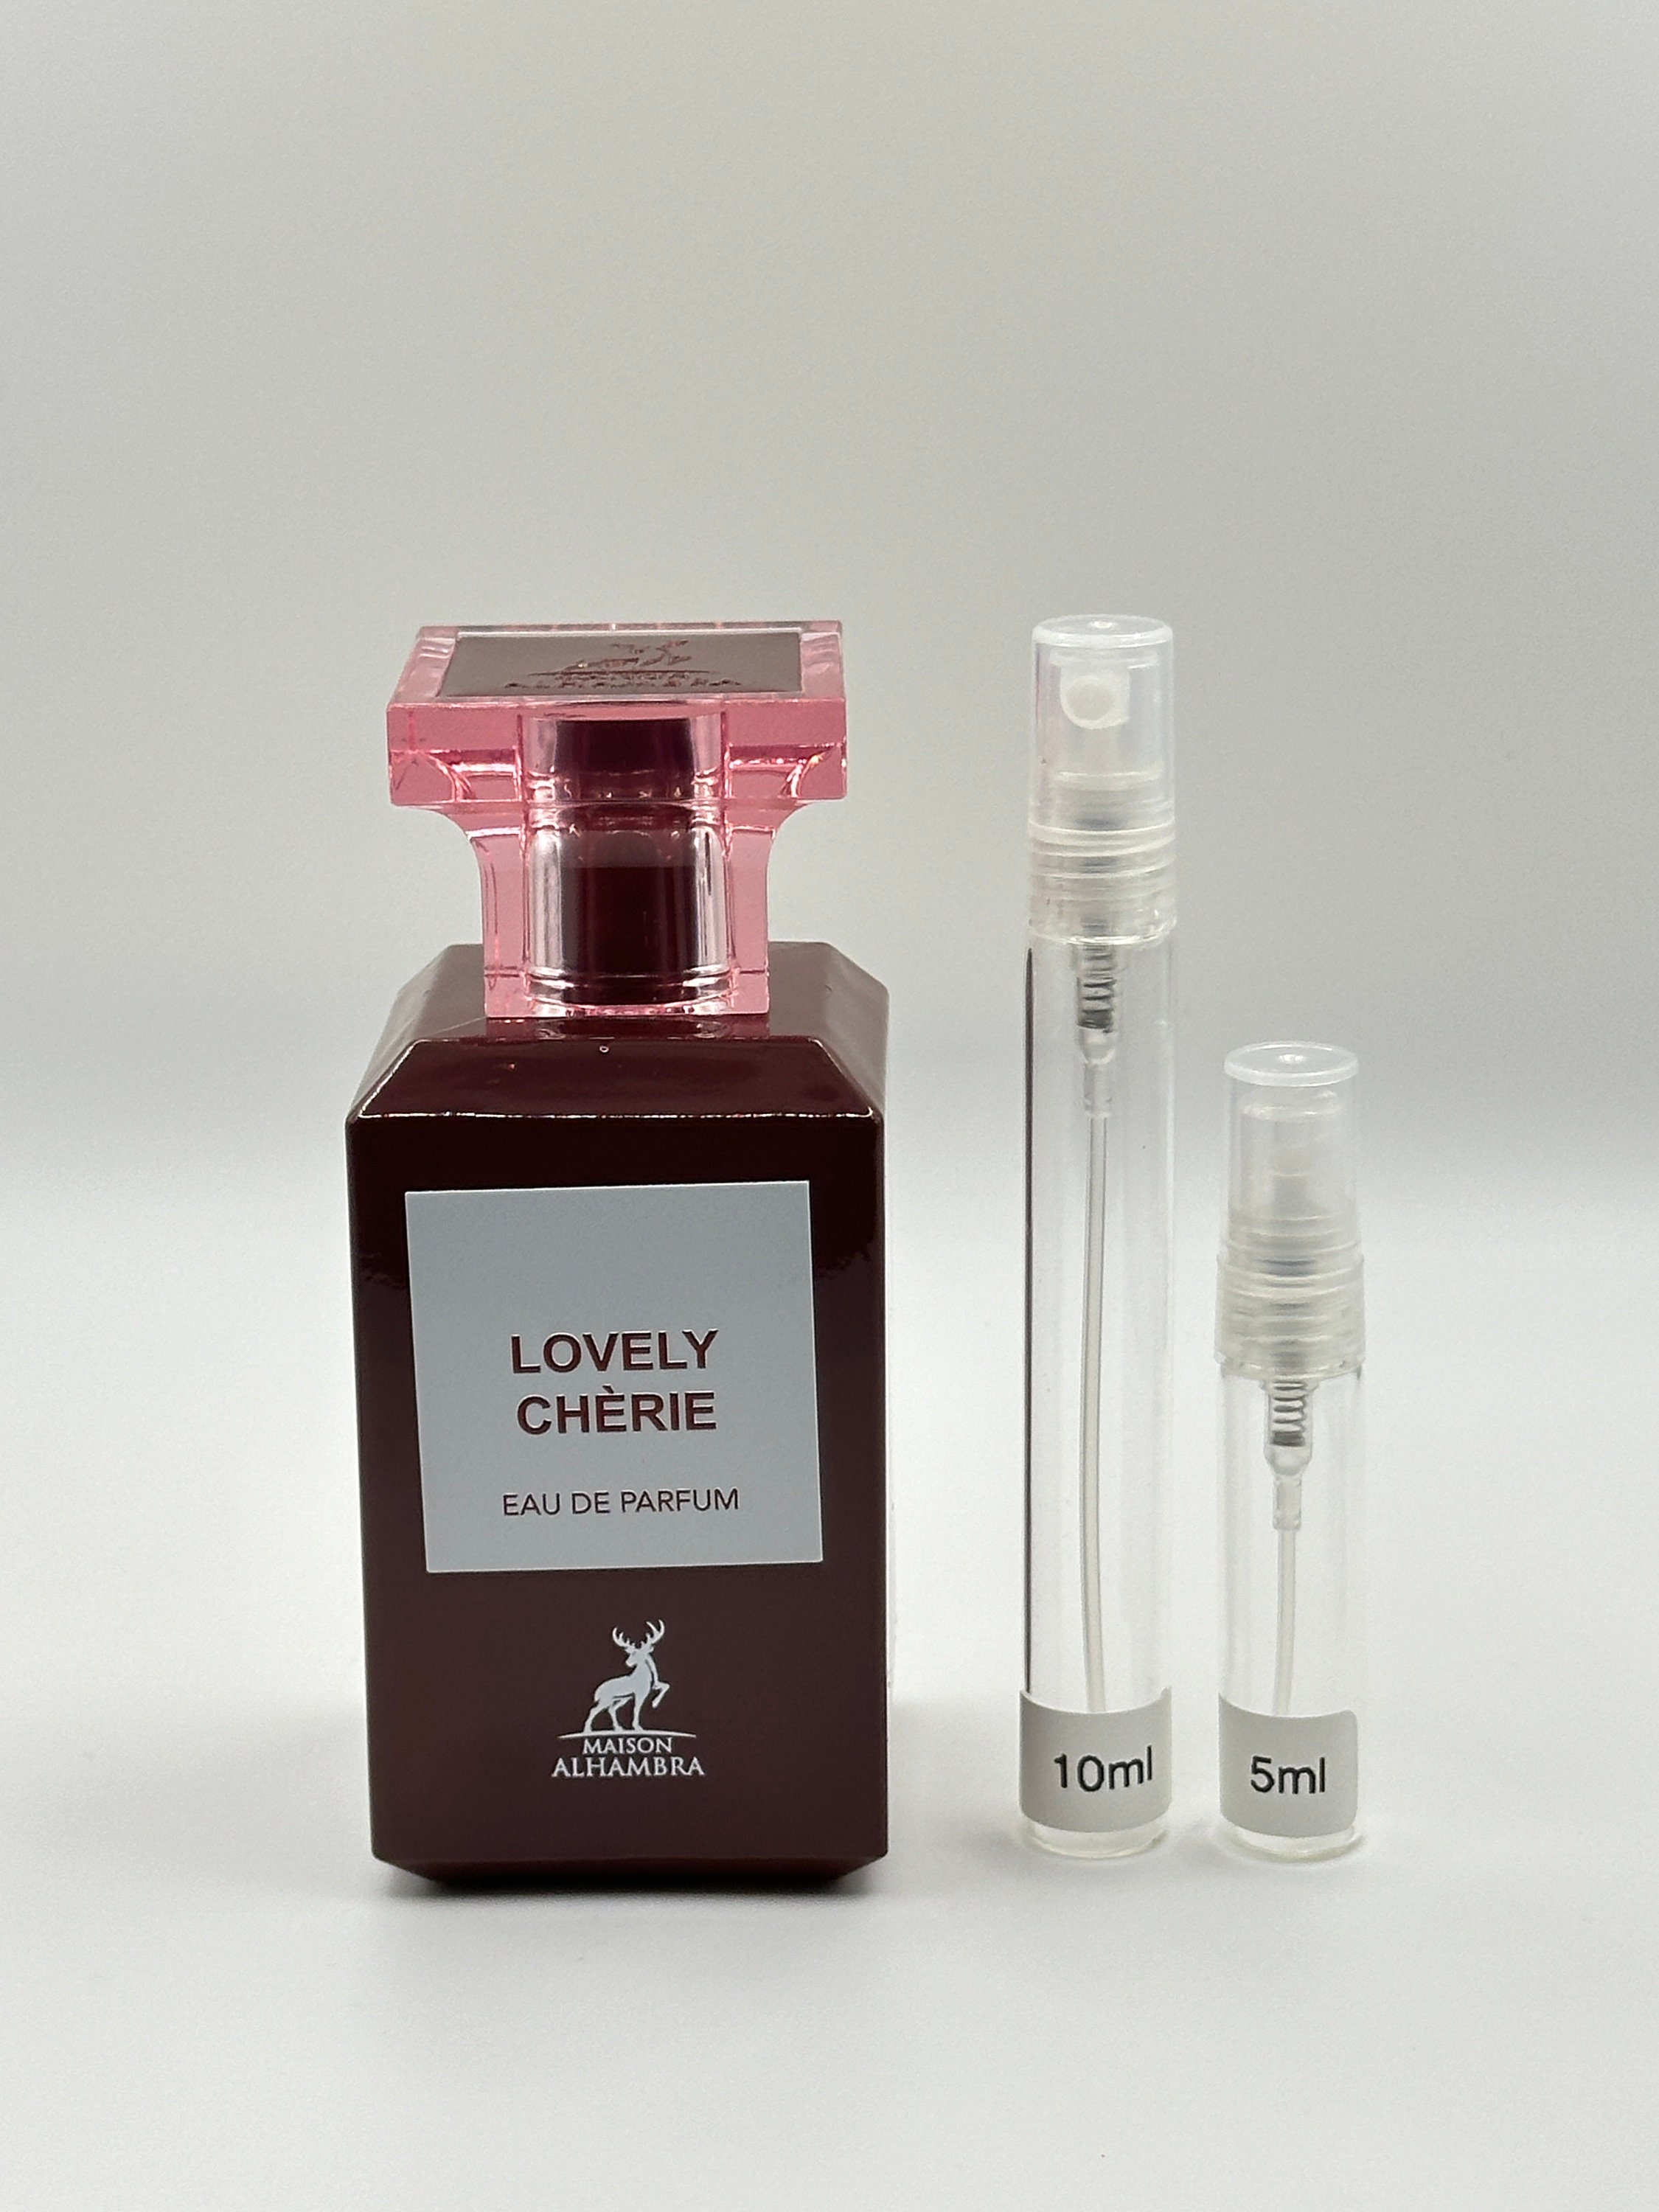 Maison Violet - 10 ml Parfum UN AIR D'APOGEE